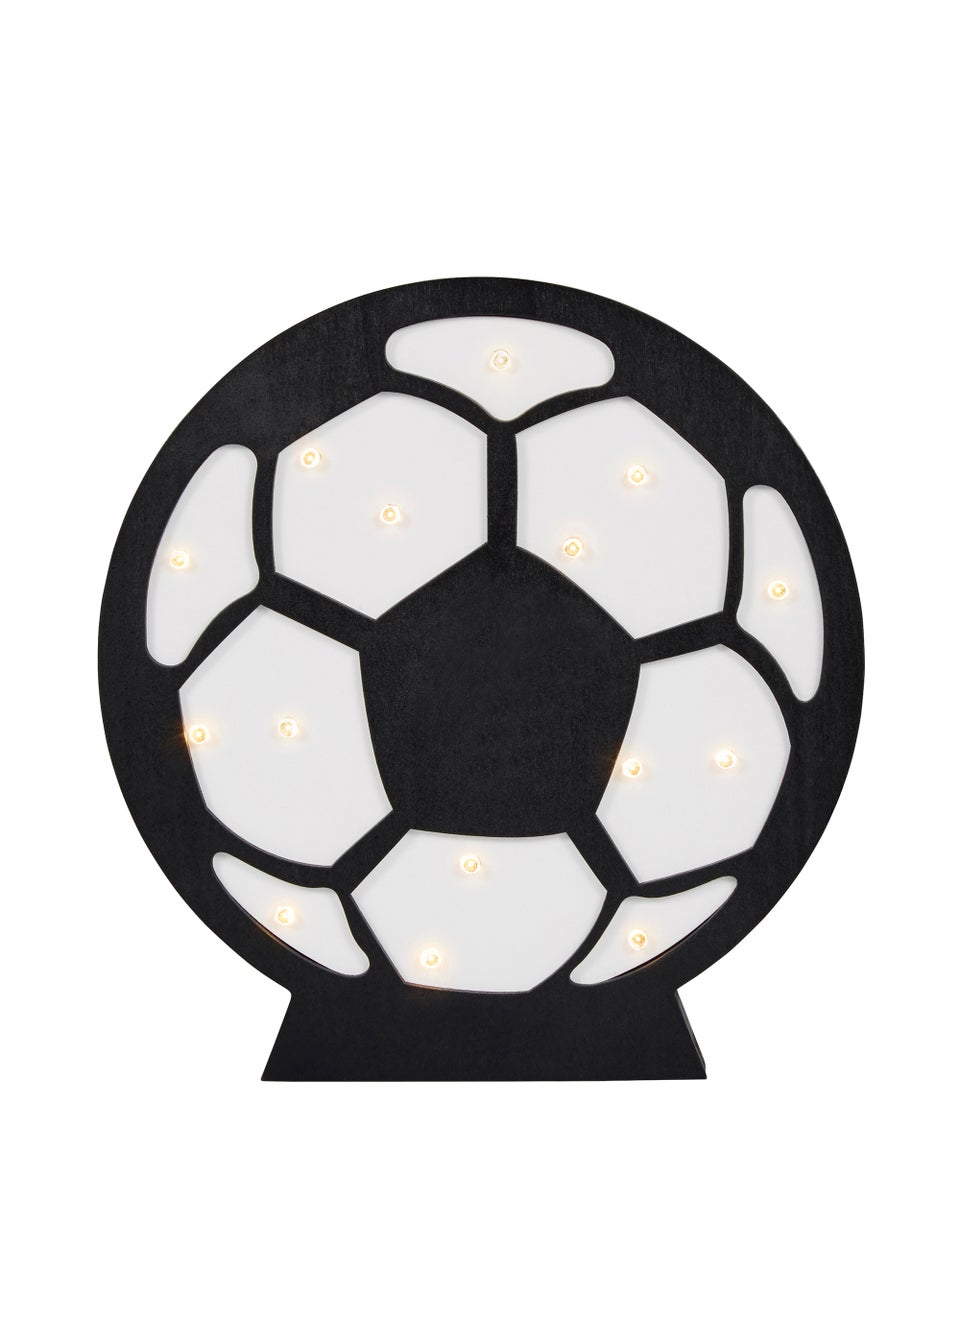 Glow Football Light (21cm x 20cm x 3cm)